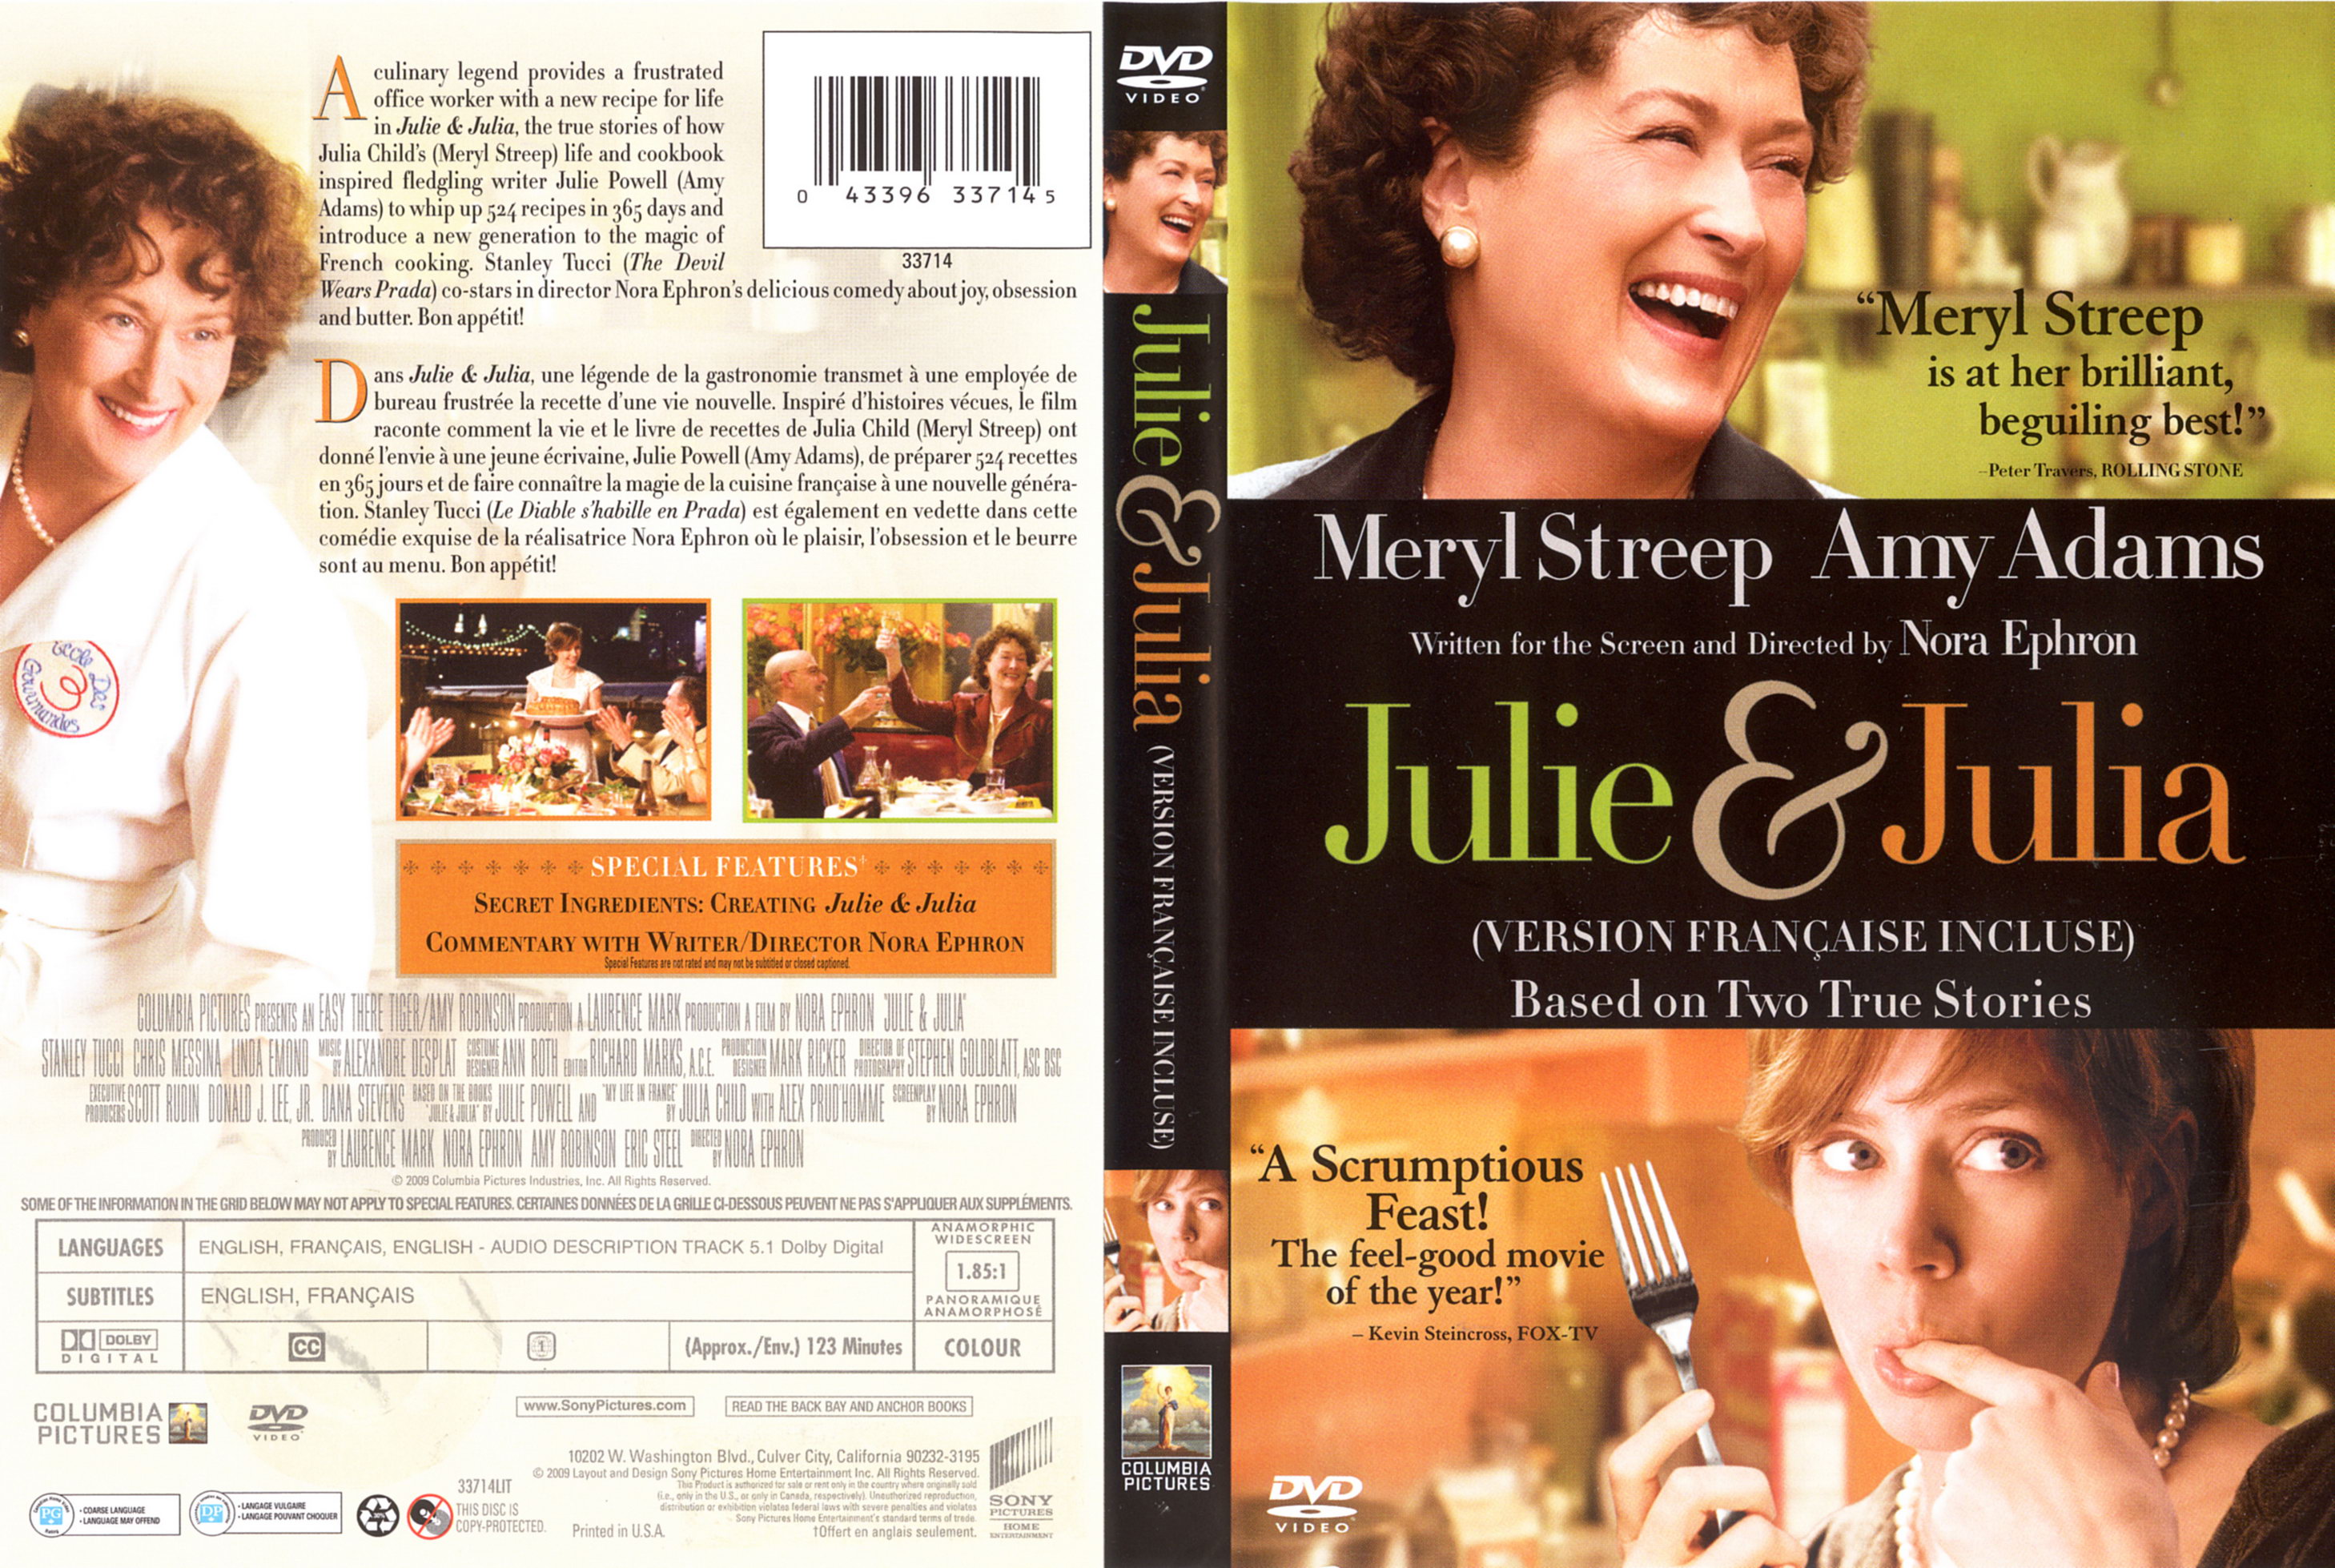 Jaquette Dvd De Julie And Julia Canadienne Cinéma Passion